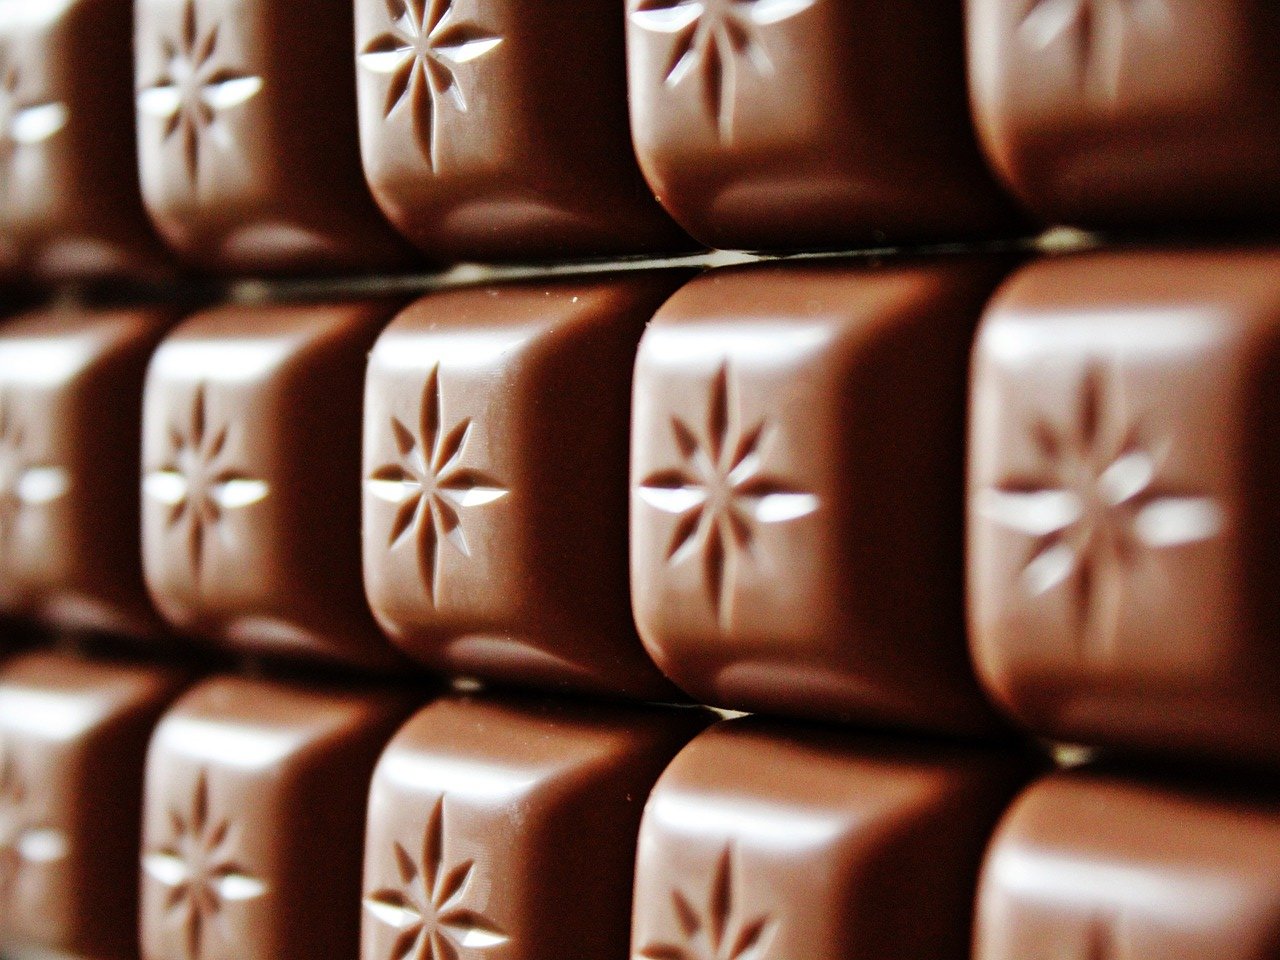 Beneficios del chocolate negro - chocolate con leche con mayor proporción de cacao (no oscuro)